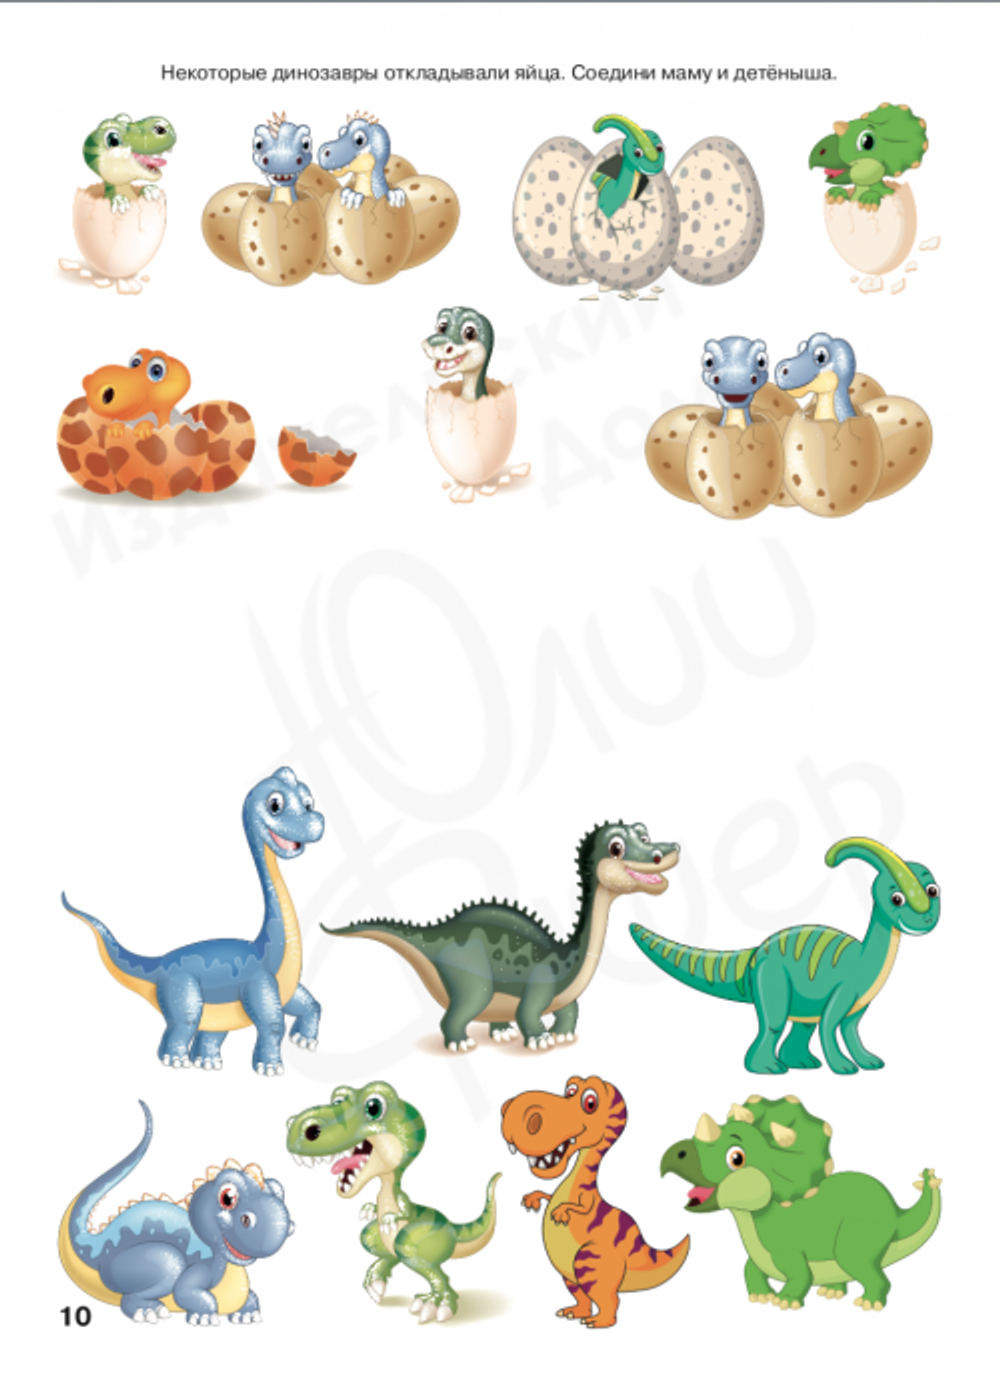 Картинки и дидактические игры для детей про динозавров